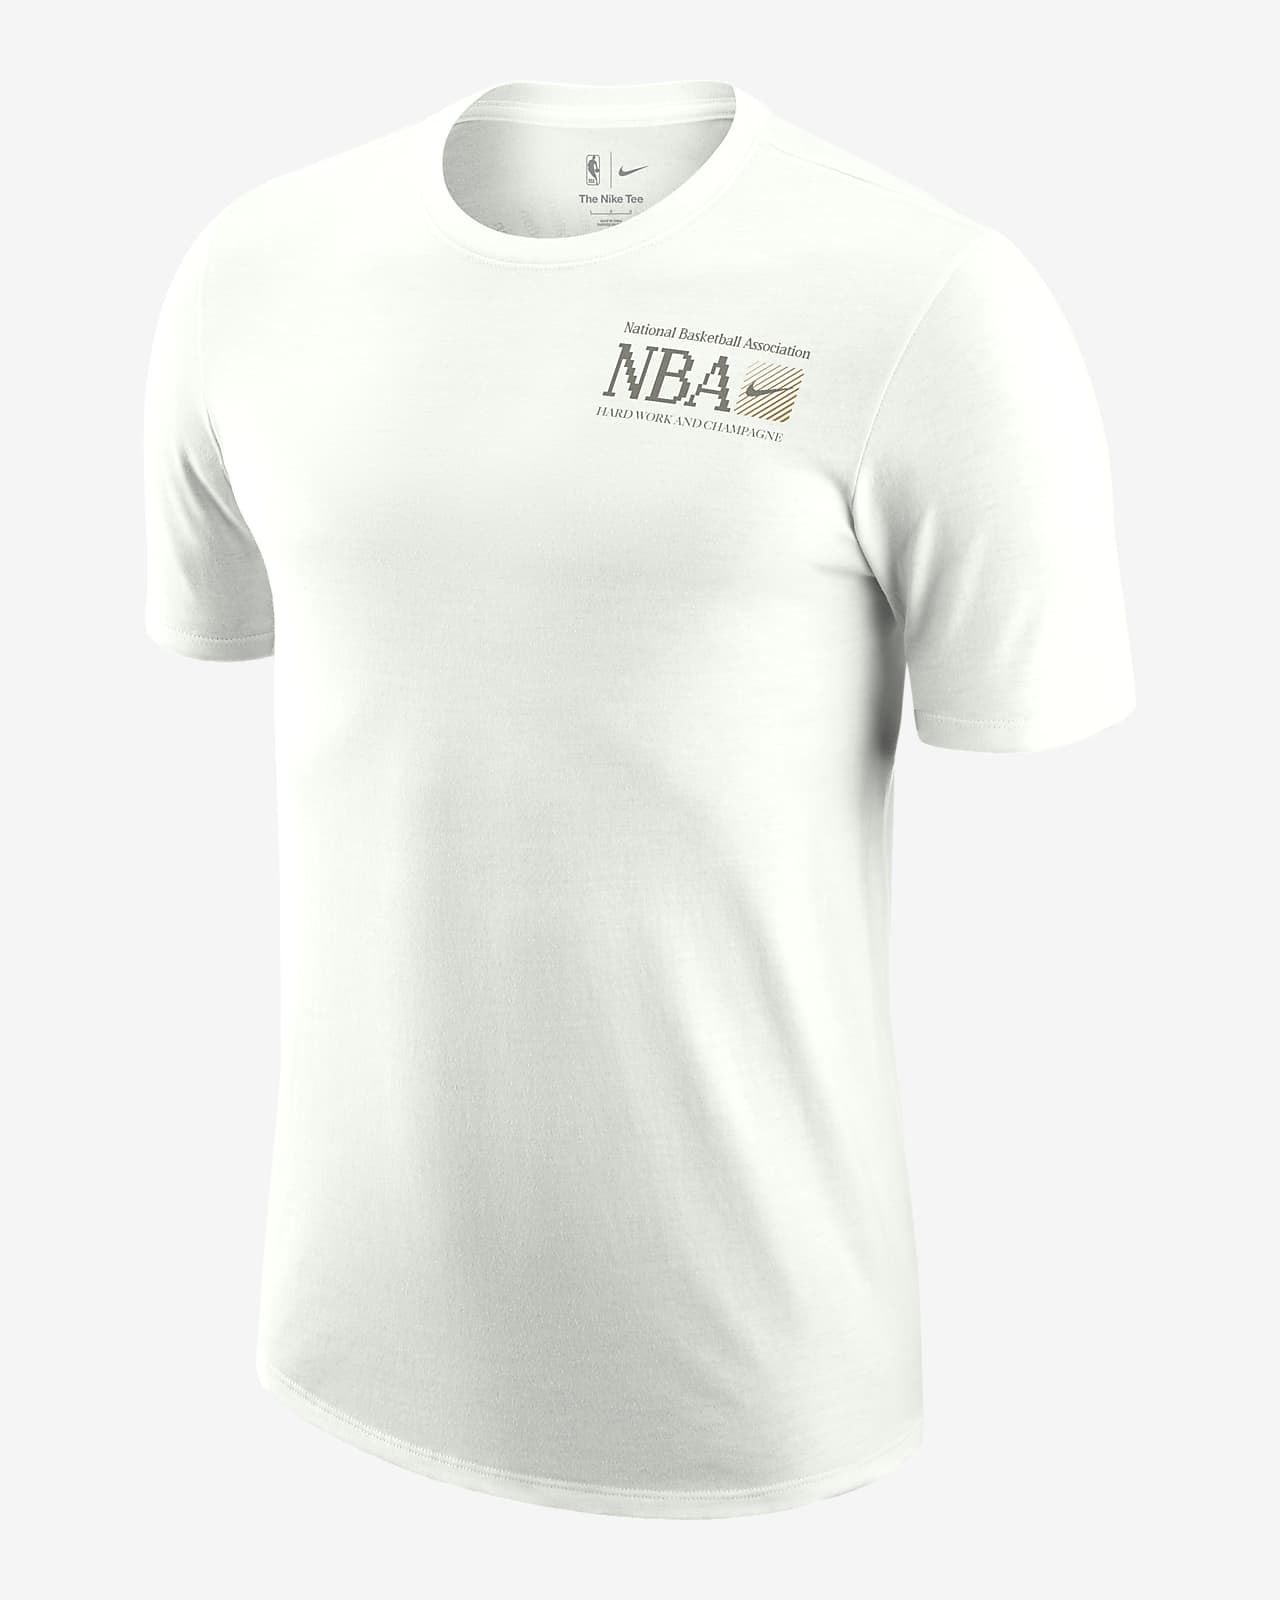 Nike Nba Tights Tshirts - Buy Nike Nba Tights Tshirts online in India